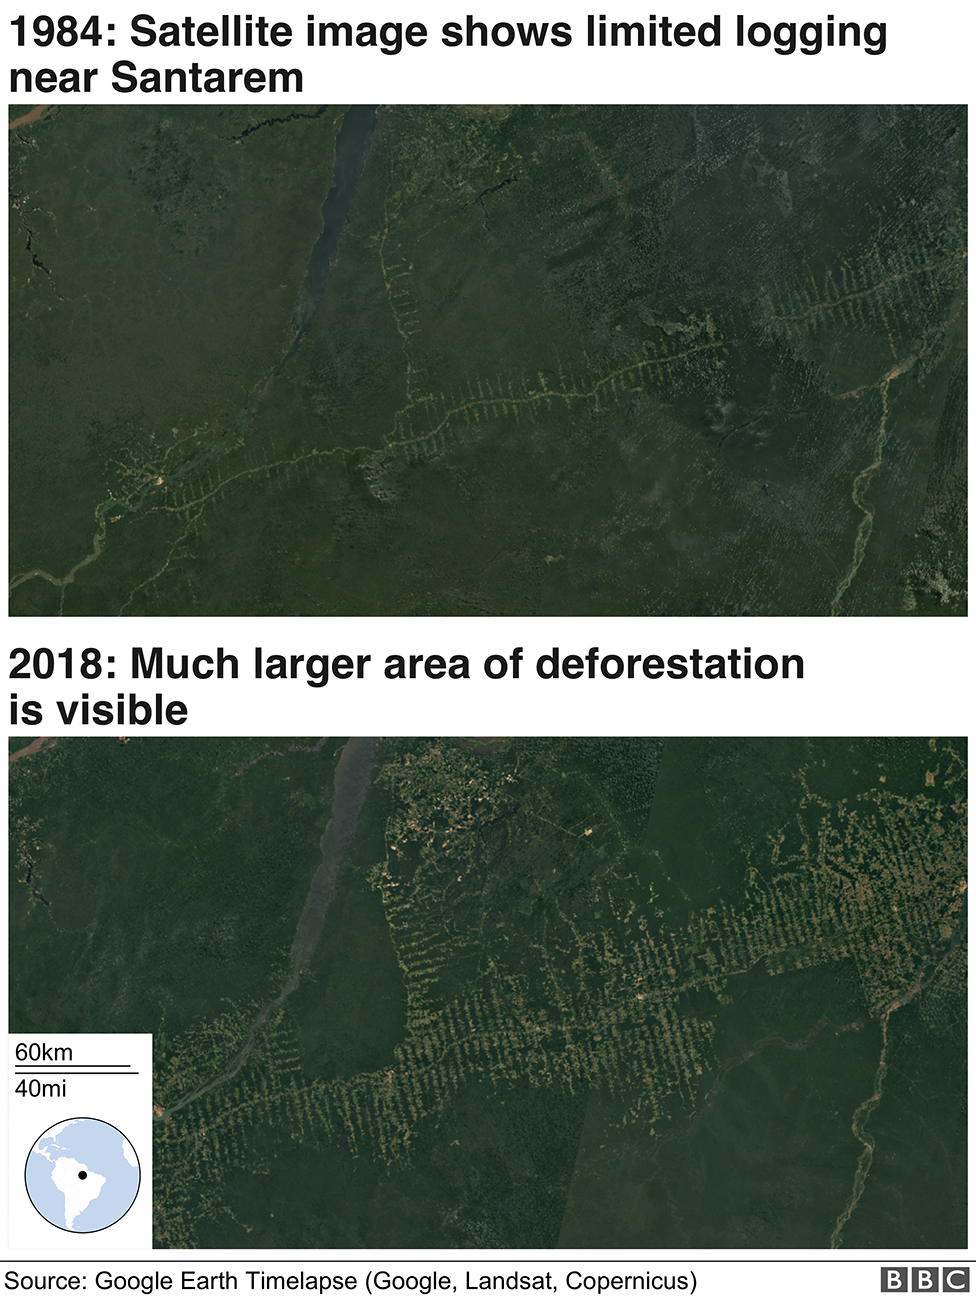 Спутниковые снимки обезлесения, показывающие изменения с 1984 года